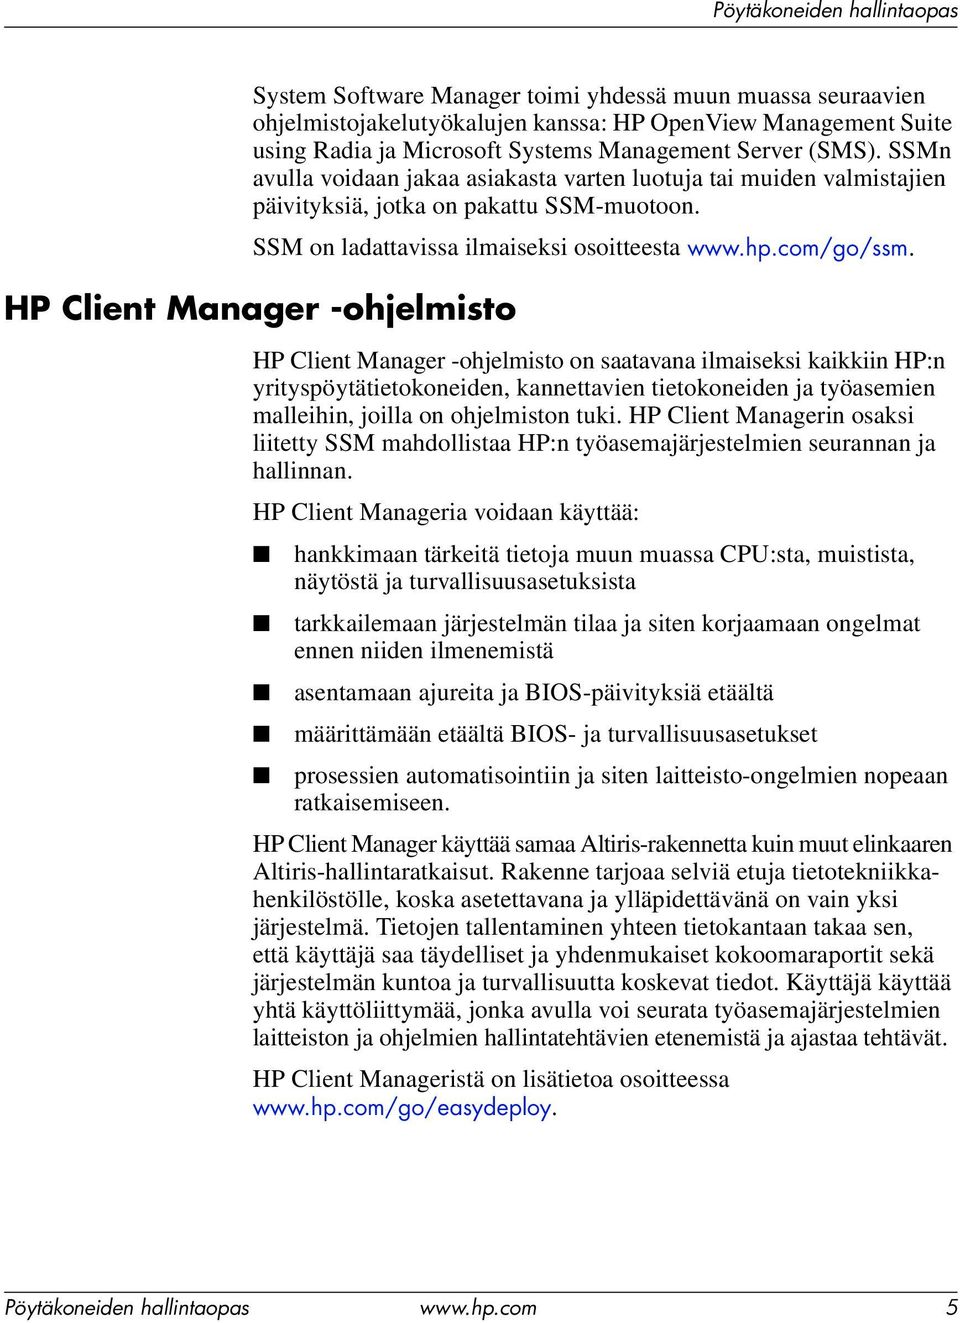 HP Client Manager -ohjelmisto HP Client Manager -ohjelmisto on saatavana ilmaiseksi kaikkiin HP:n yrityspöytätietokoneiden, kannettavien tietokoneiden ja työasemien malleihin, joilla on ohjelmiston